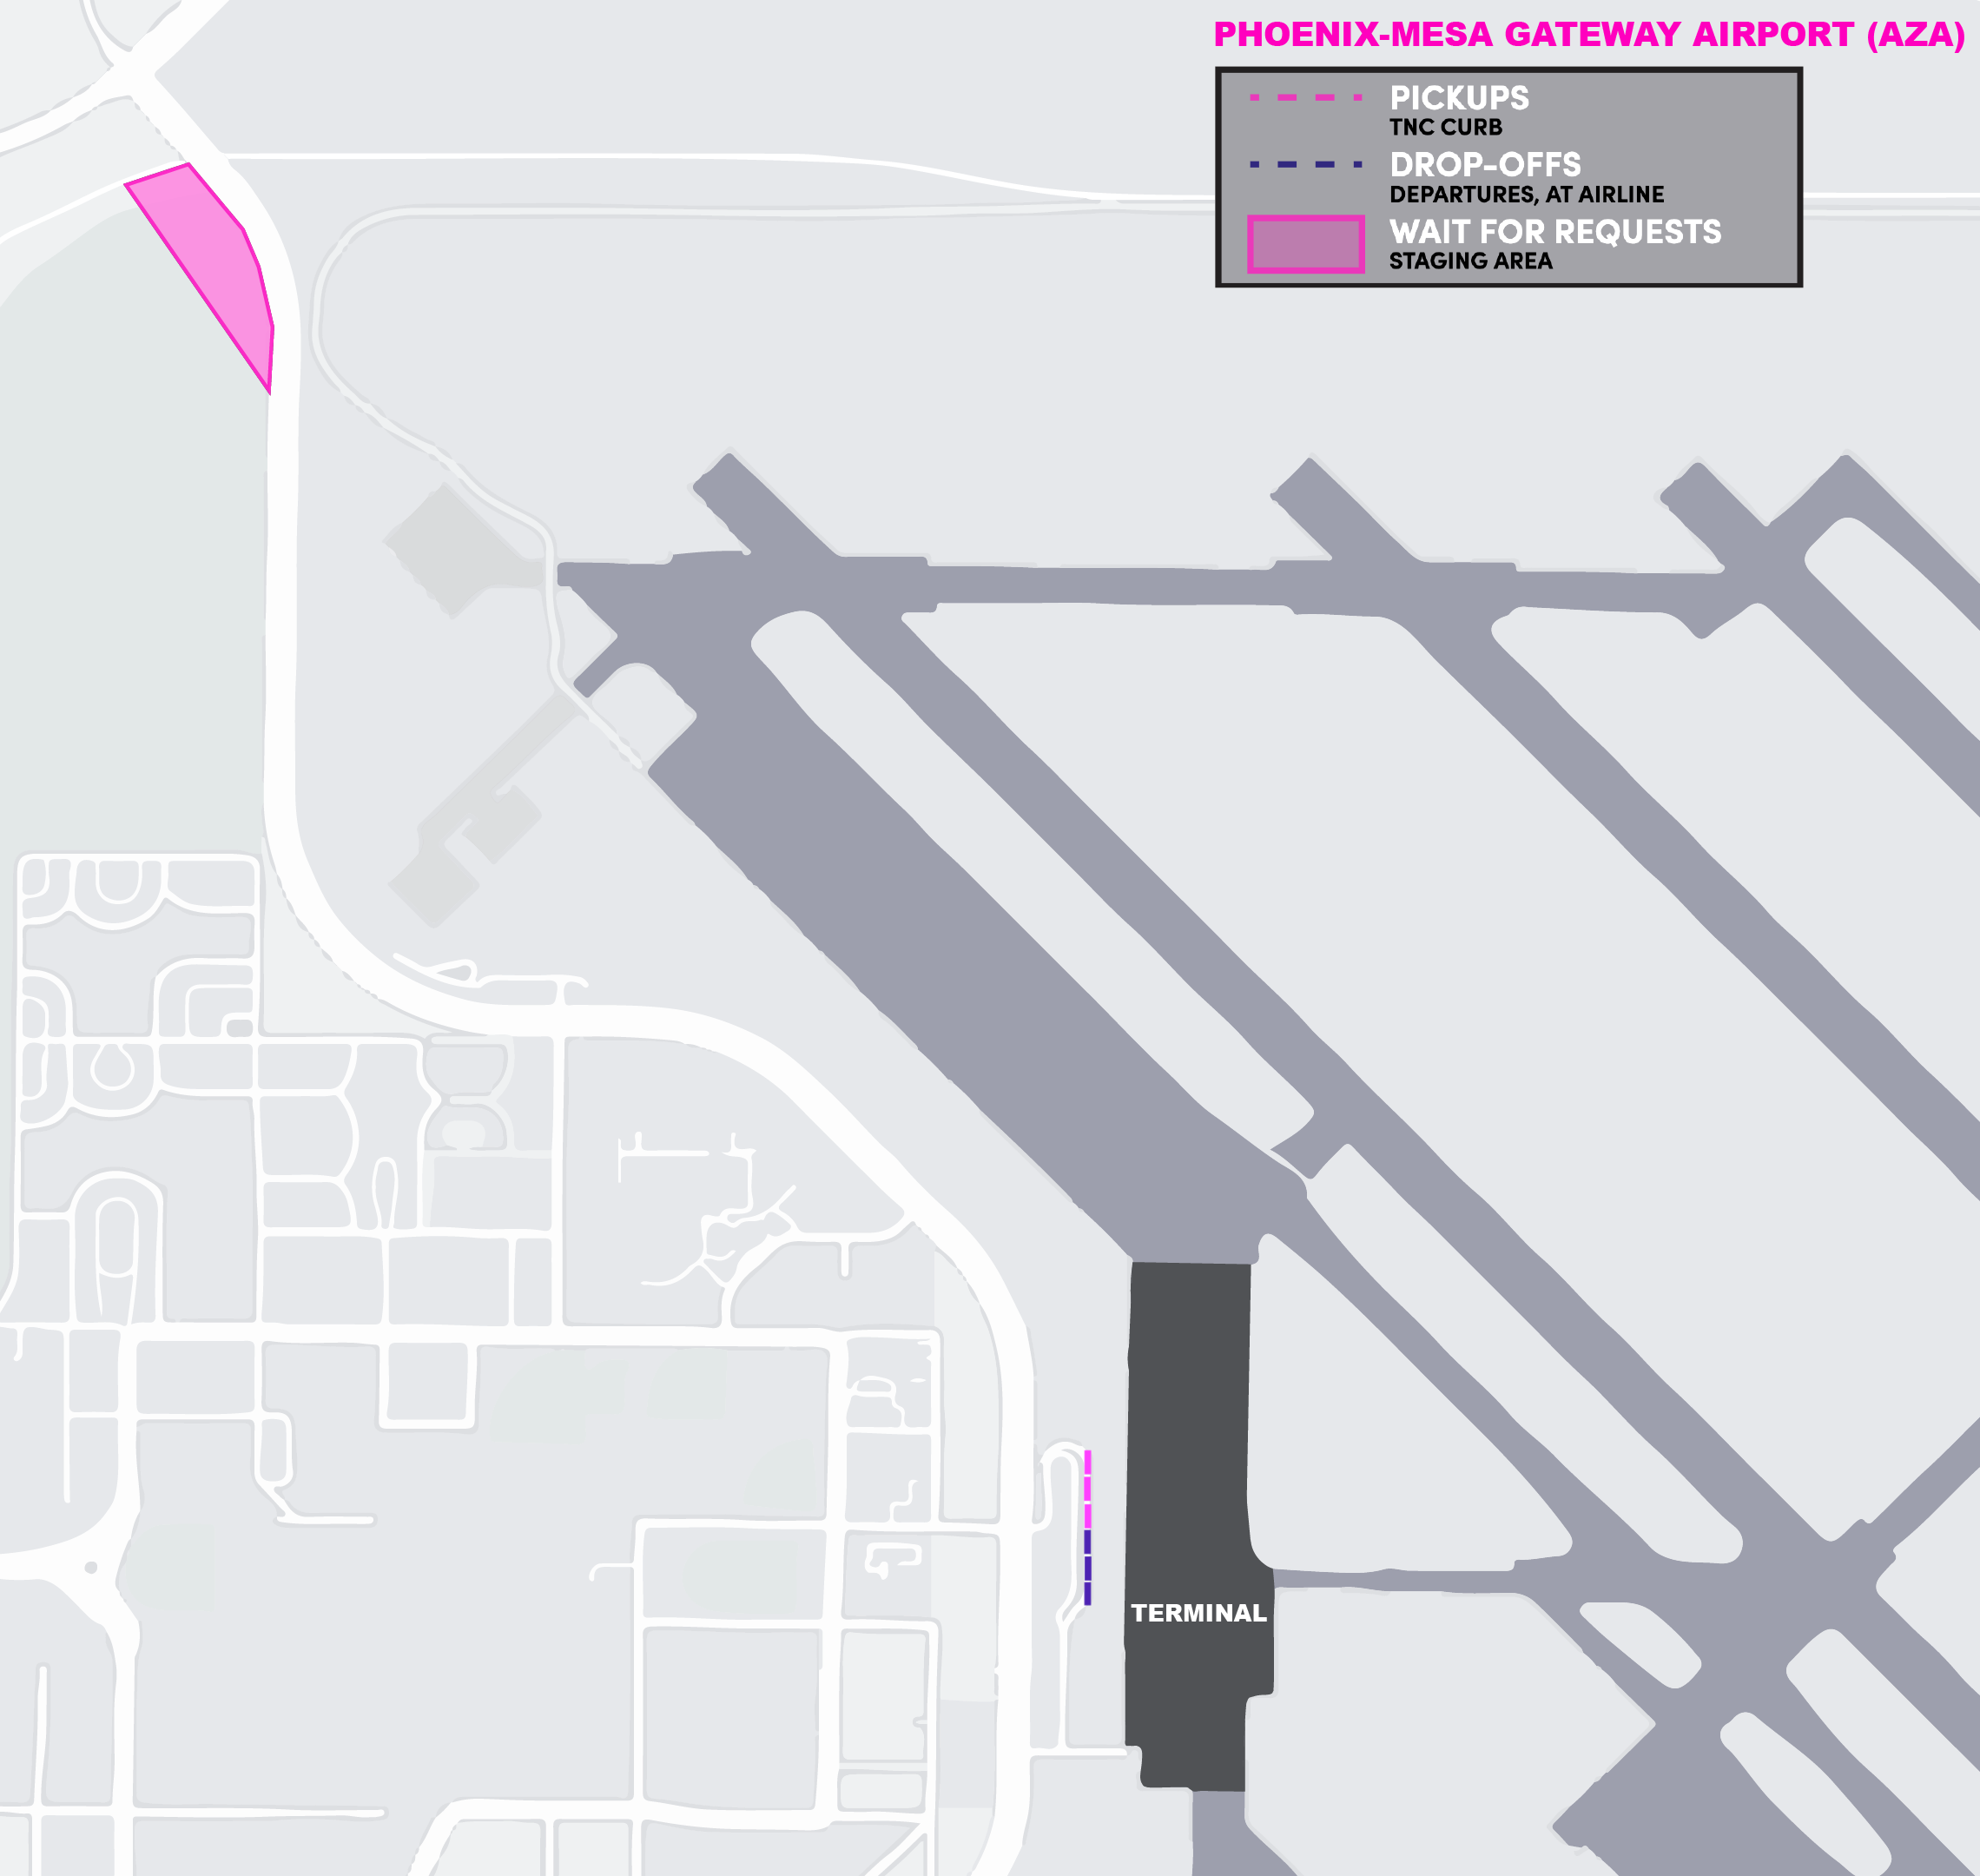 Esta imagem é um mapa do aeroporto AZA. Ela inclui o local de espera, ponto de encontro e áreas de desembarque.